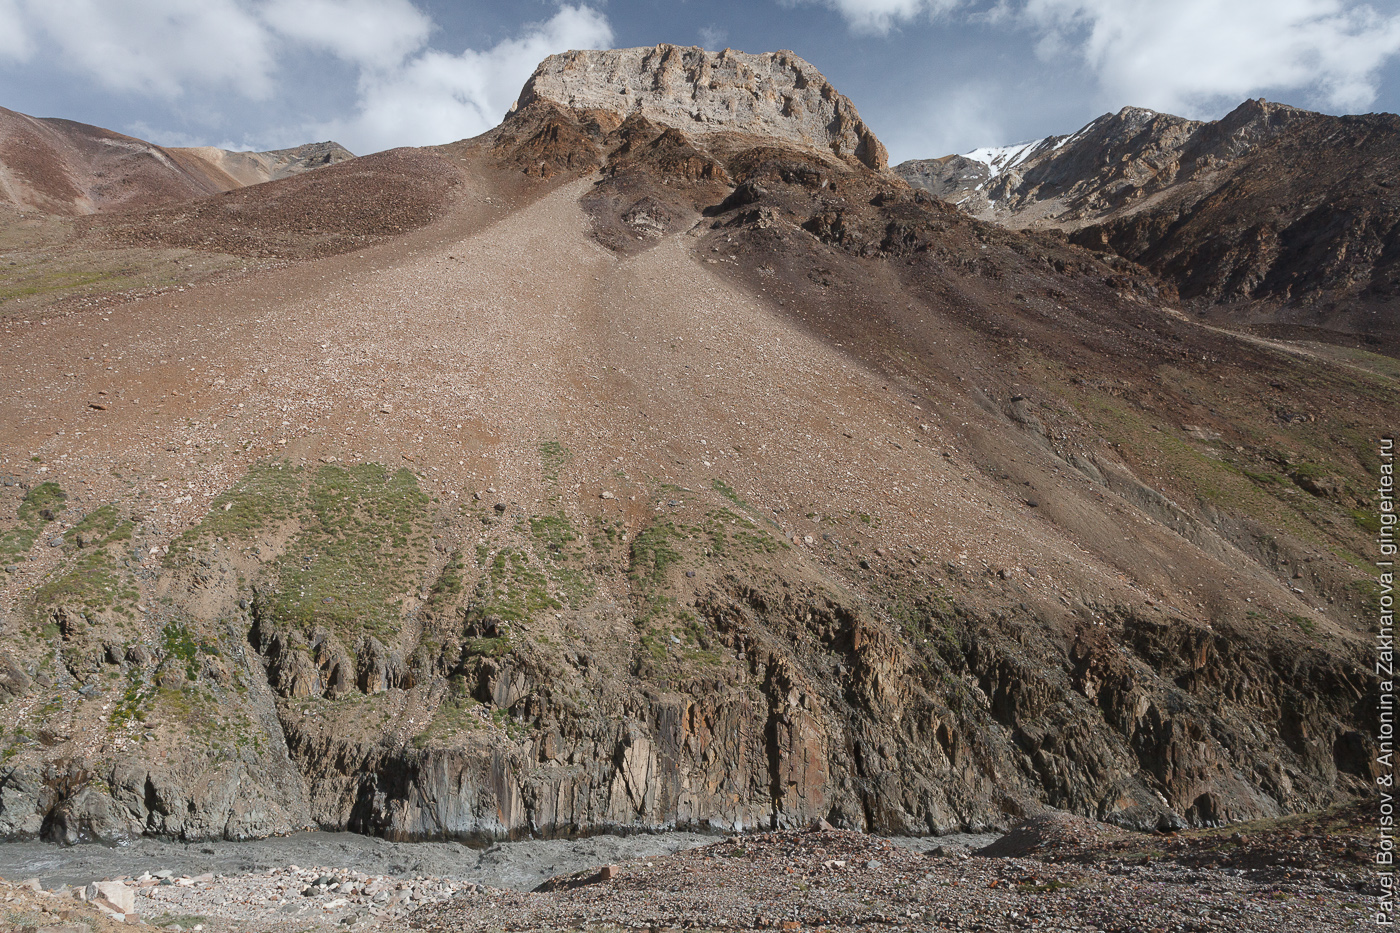 Гималайский водораздел. «Детский» поход в Ладакх и индийские Гималаи (часть 4)